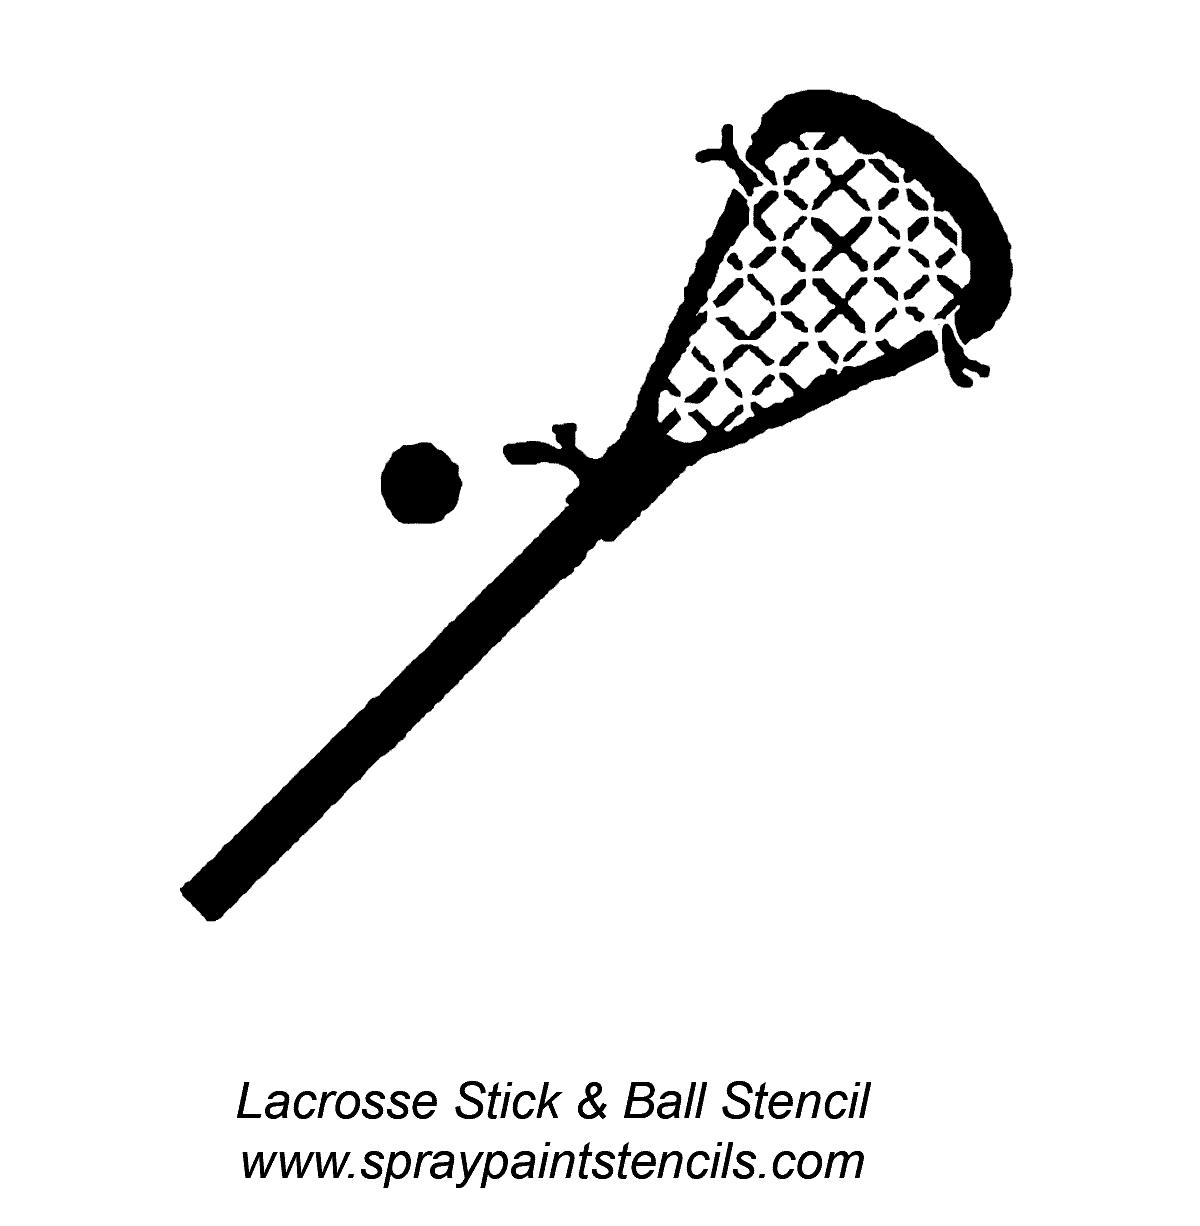 Lacrosse sticks clip art vect